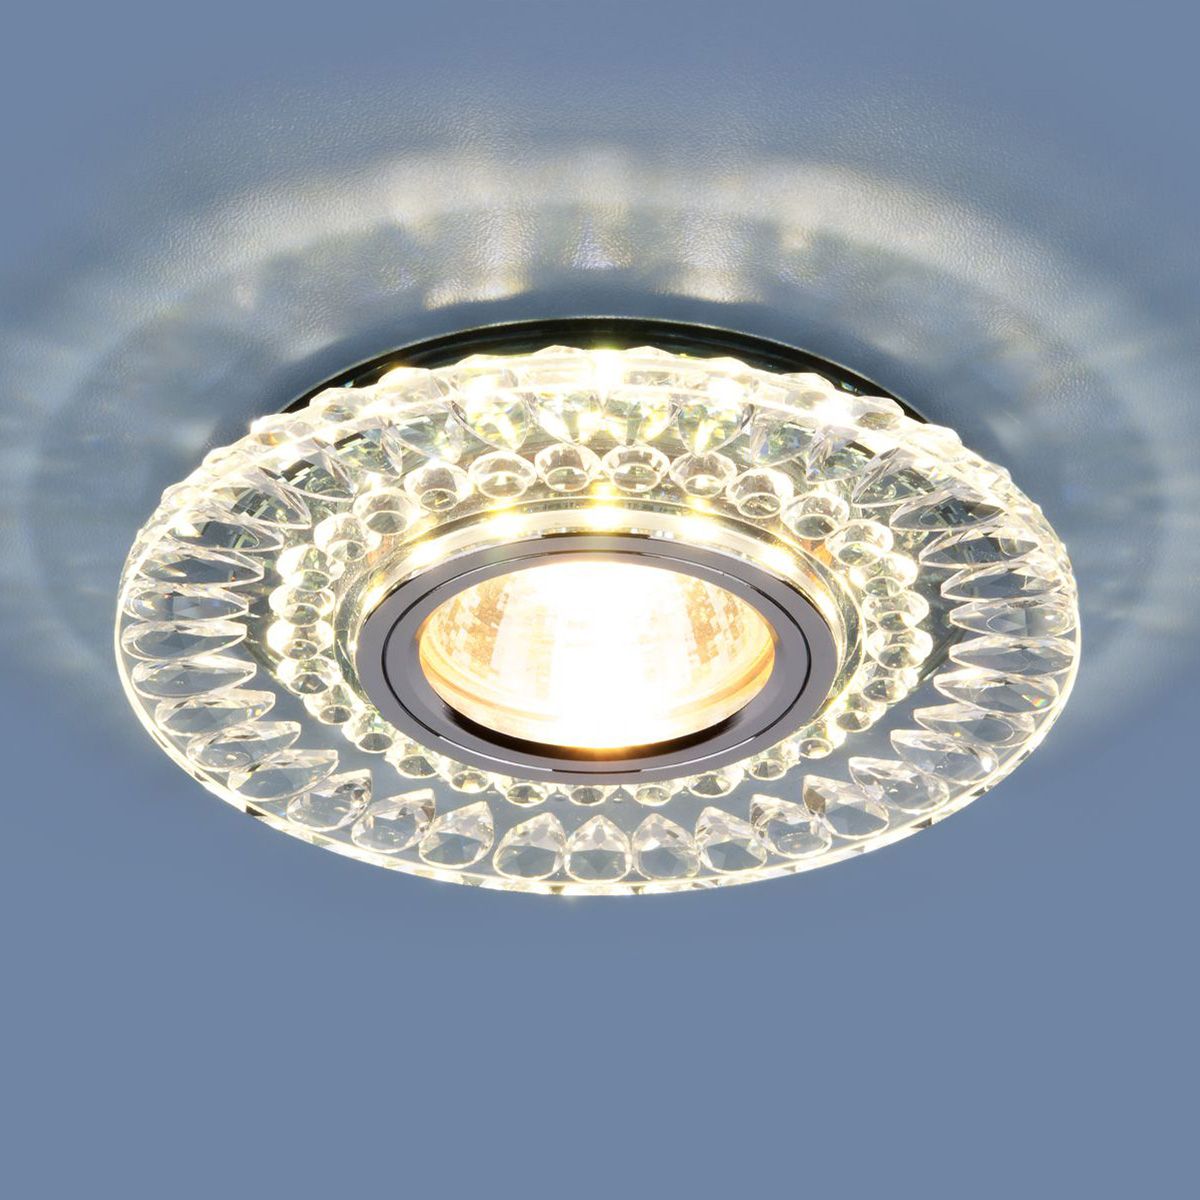 Точечный светодиодный светильник 2197 MR16 CL/SL прозрачный/серебро 2197 MR16